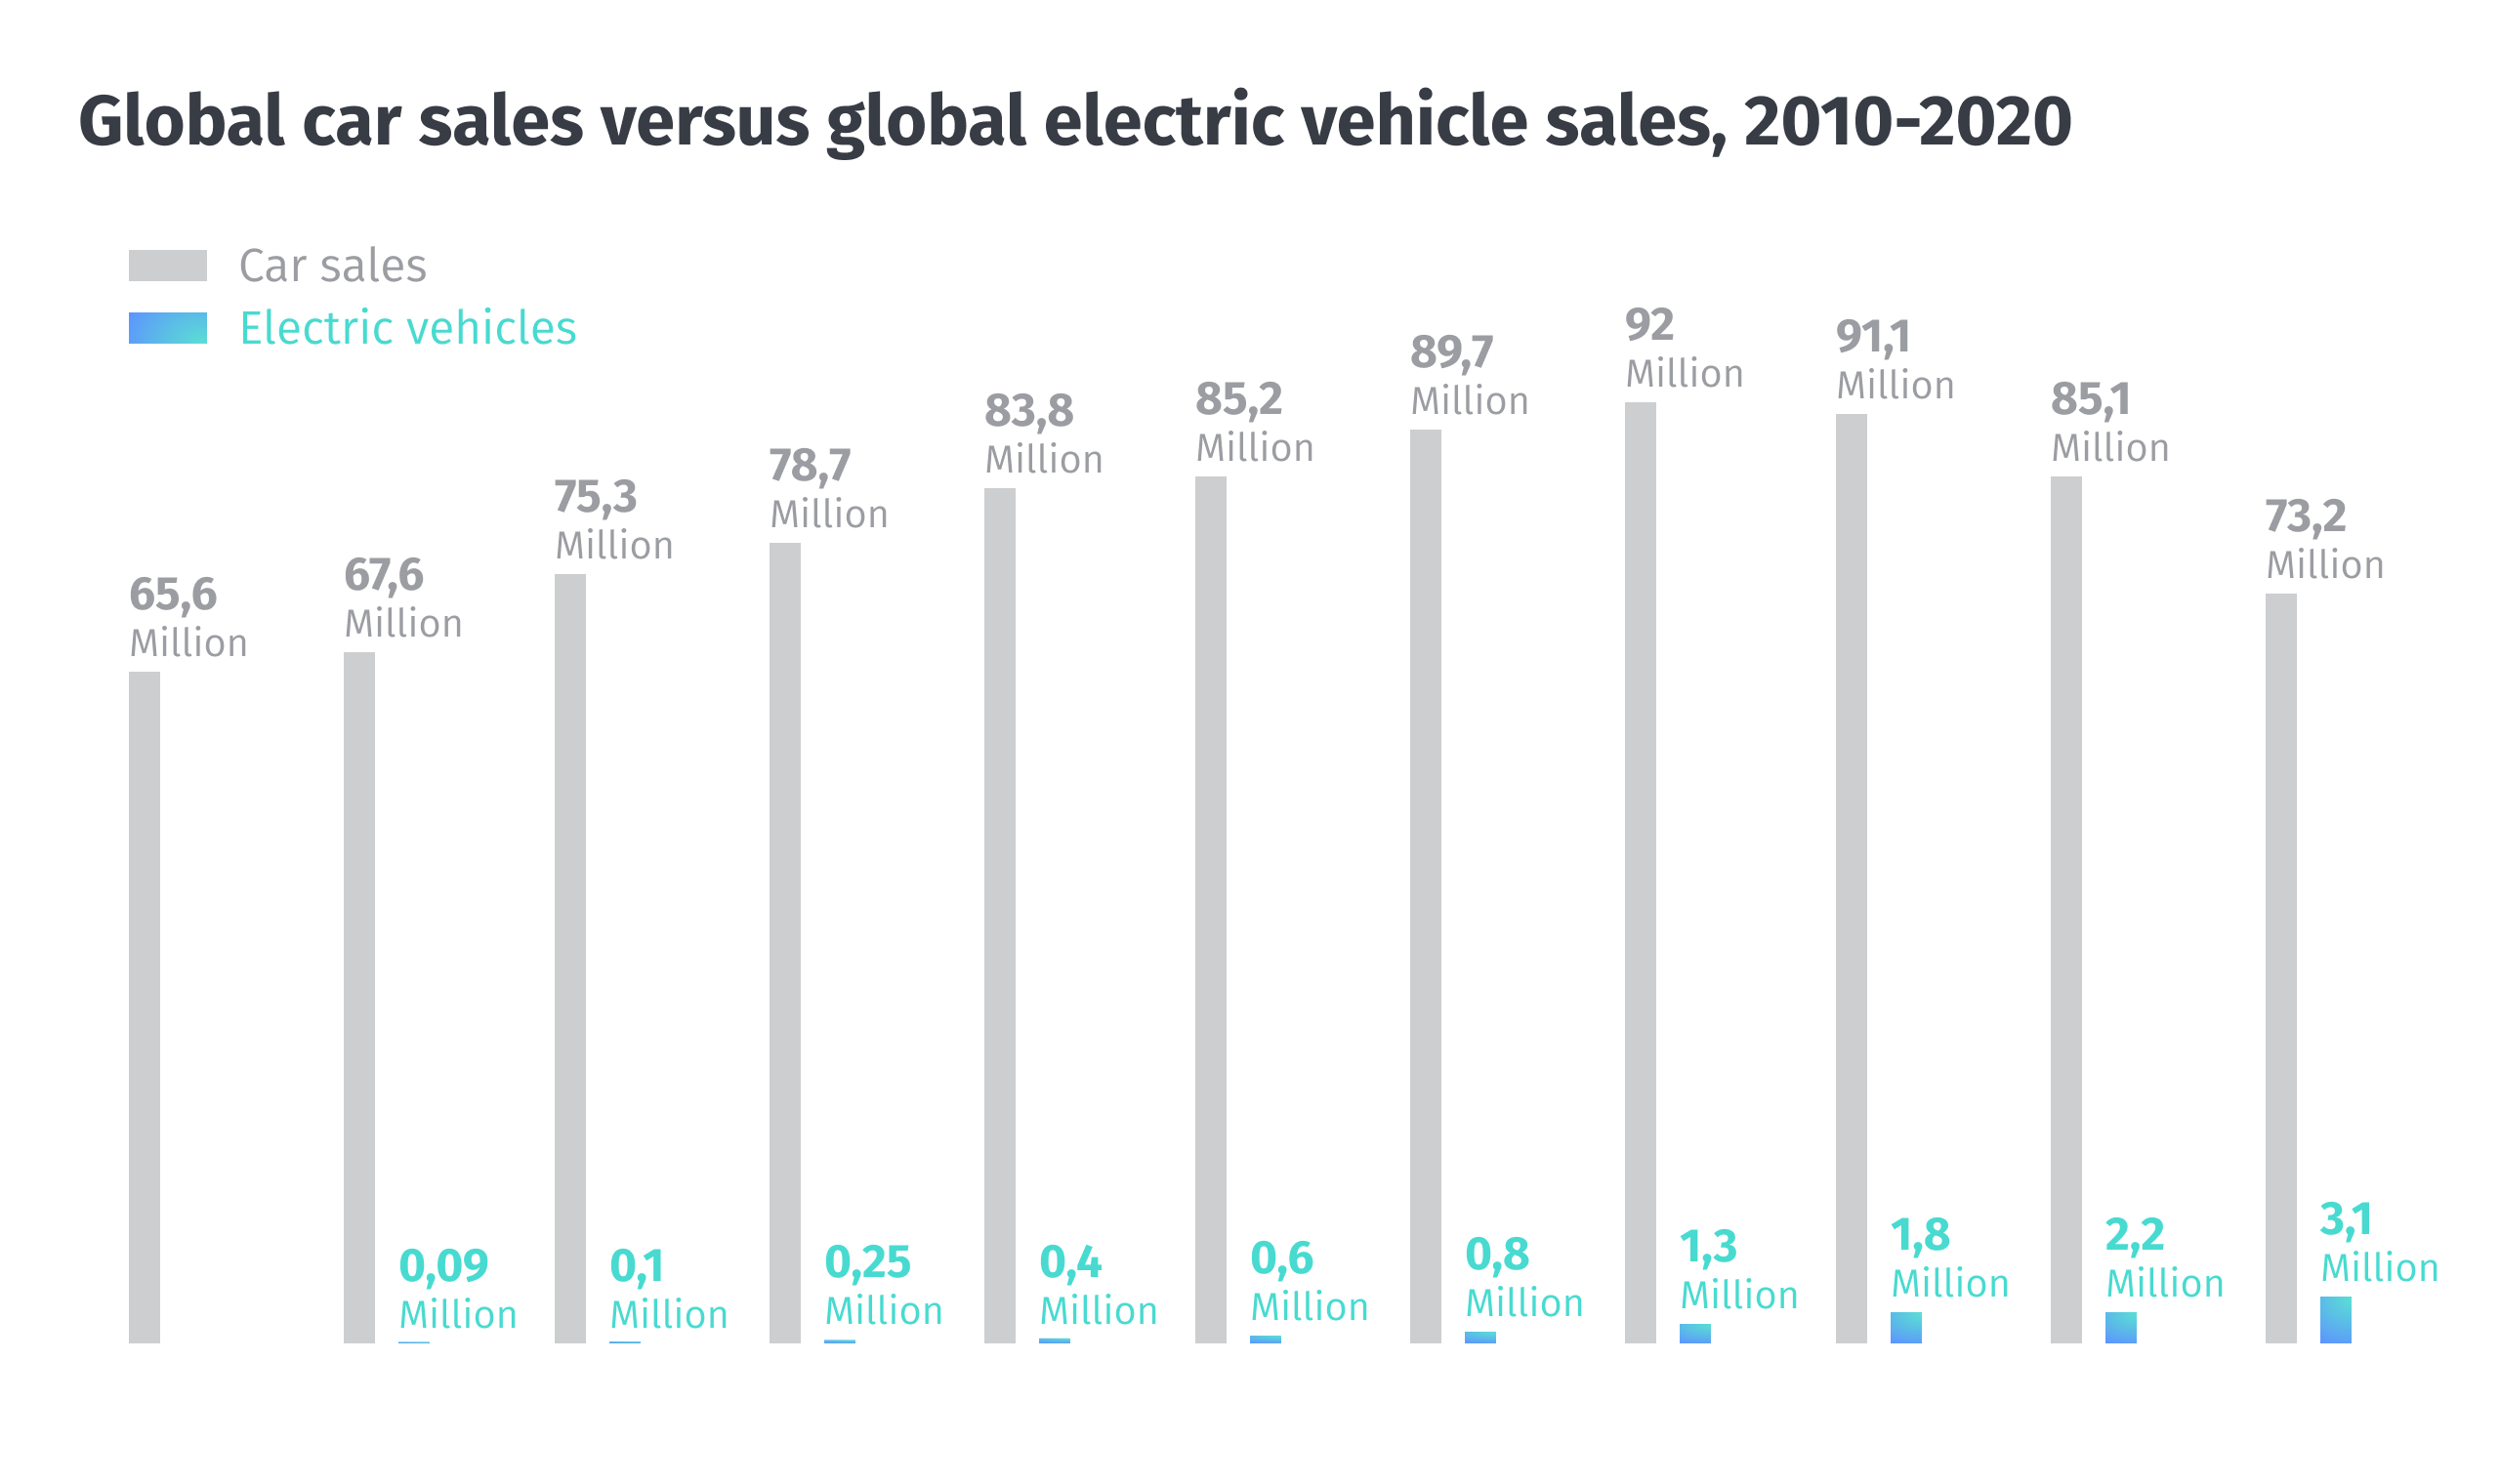 Electric_vehicles_sales_versus_car_sales